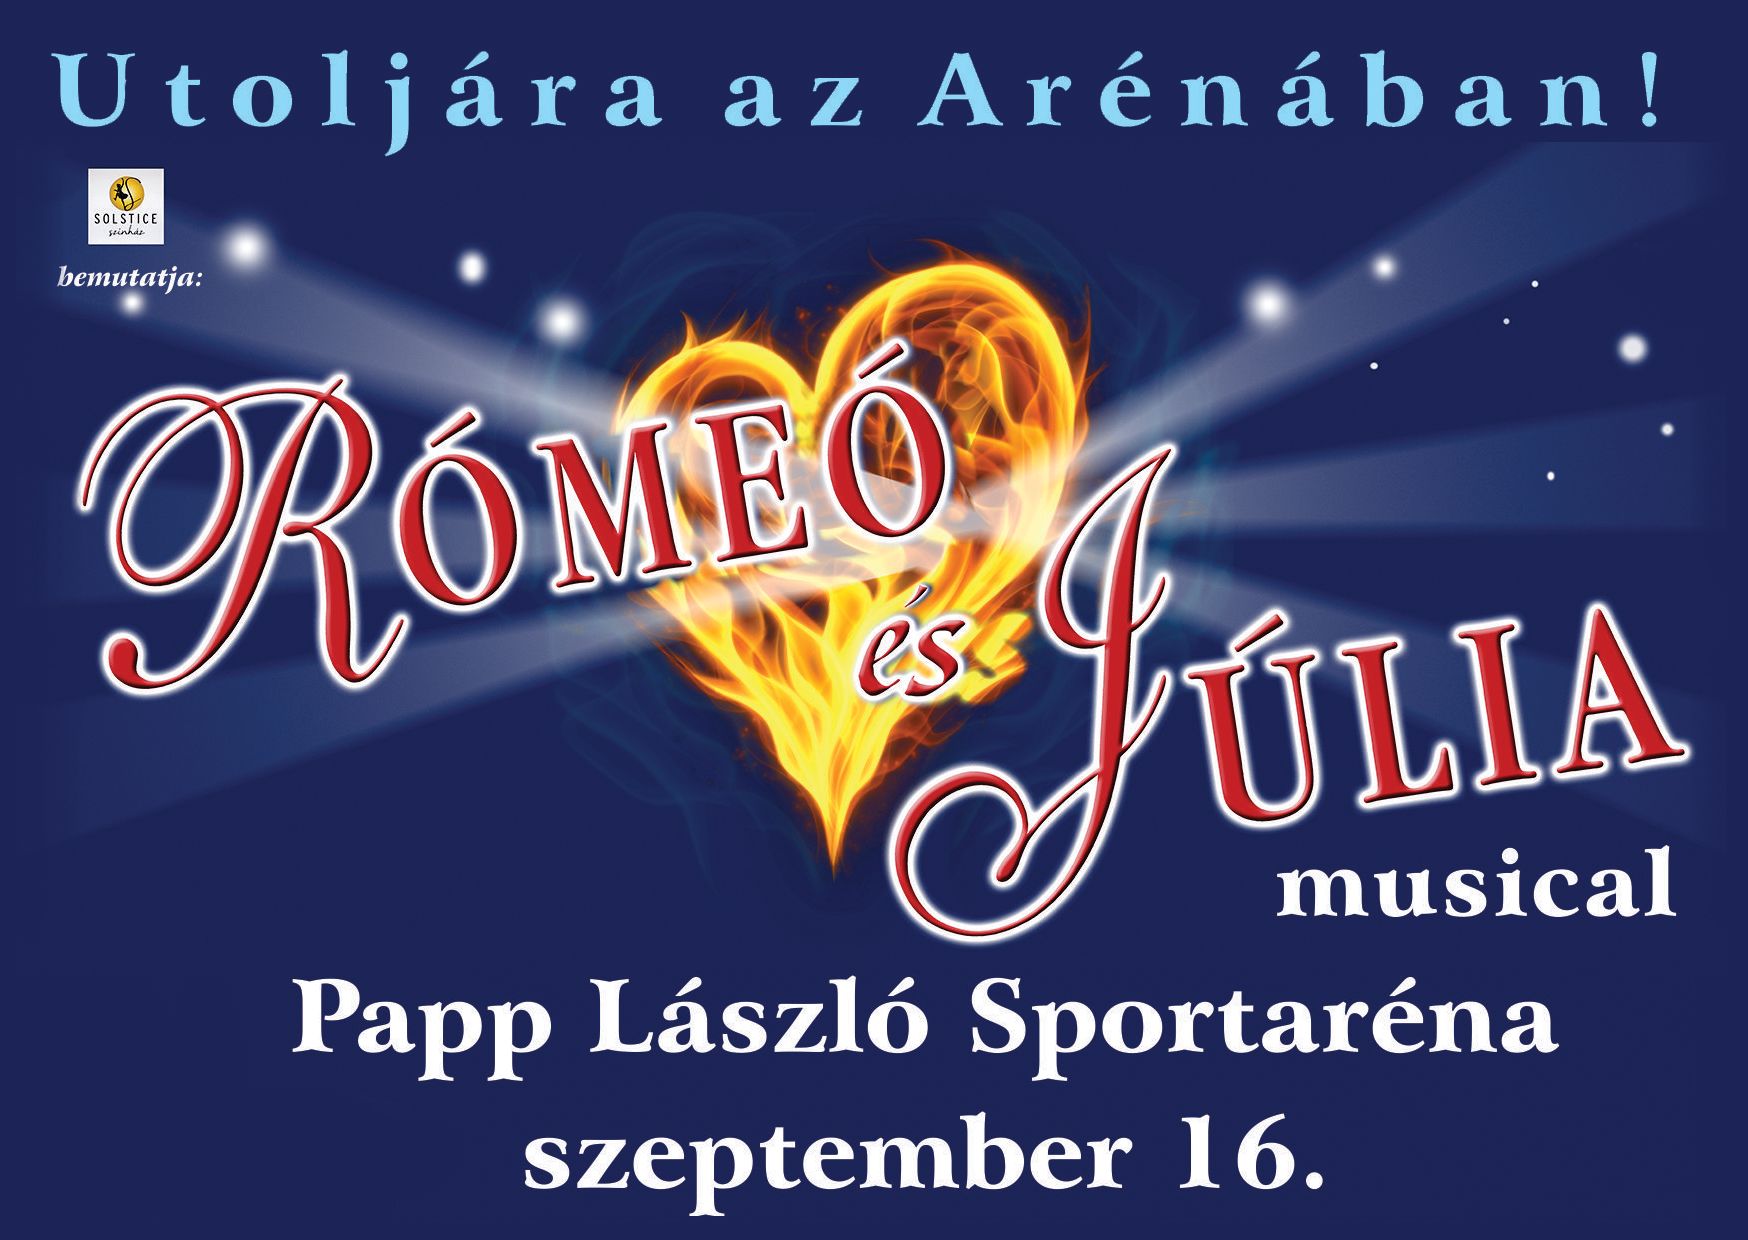 Rómeó és Júlia musical utoljára az Arénában!